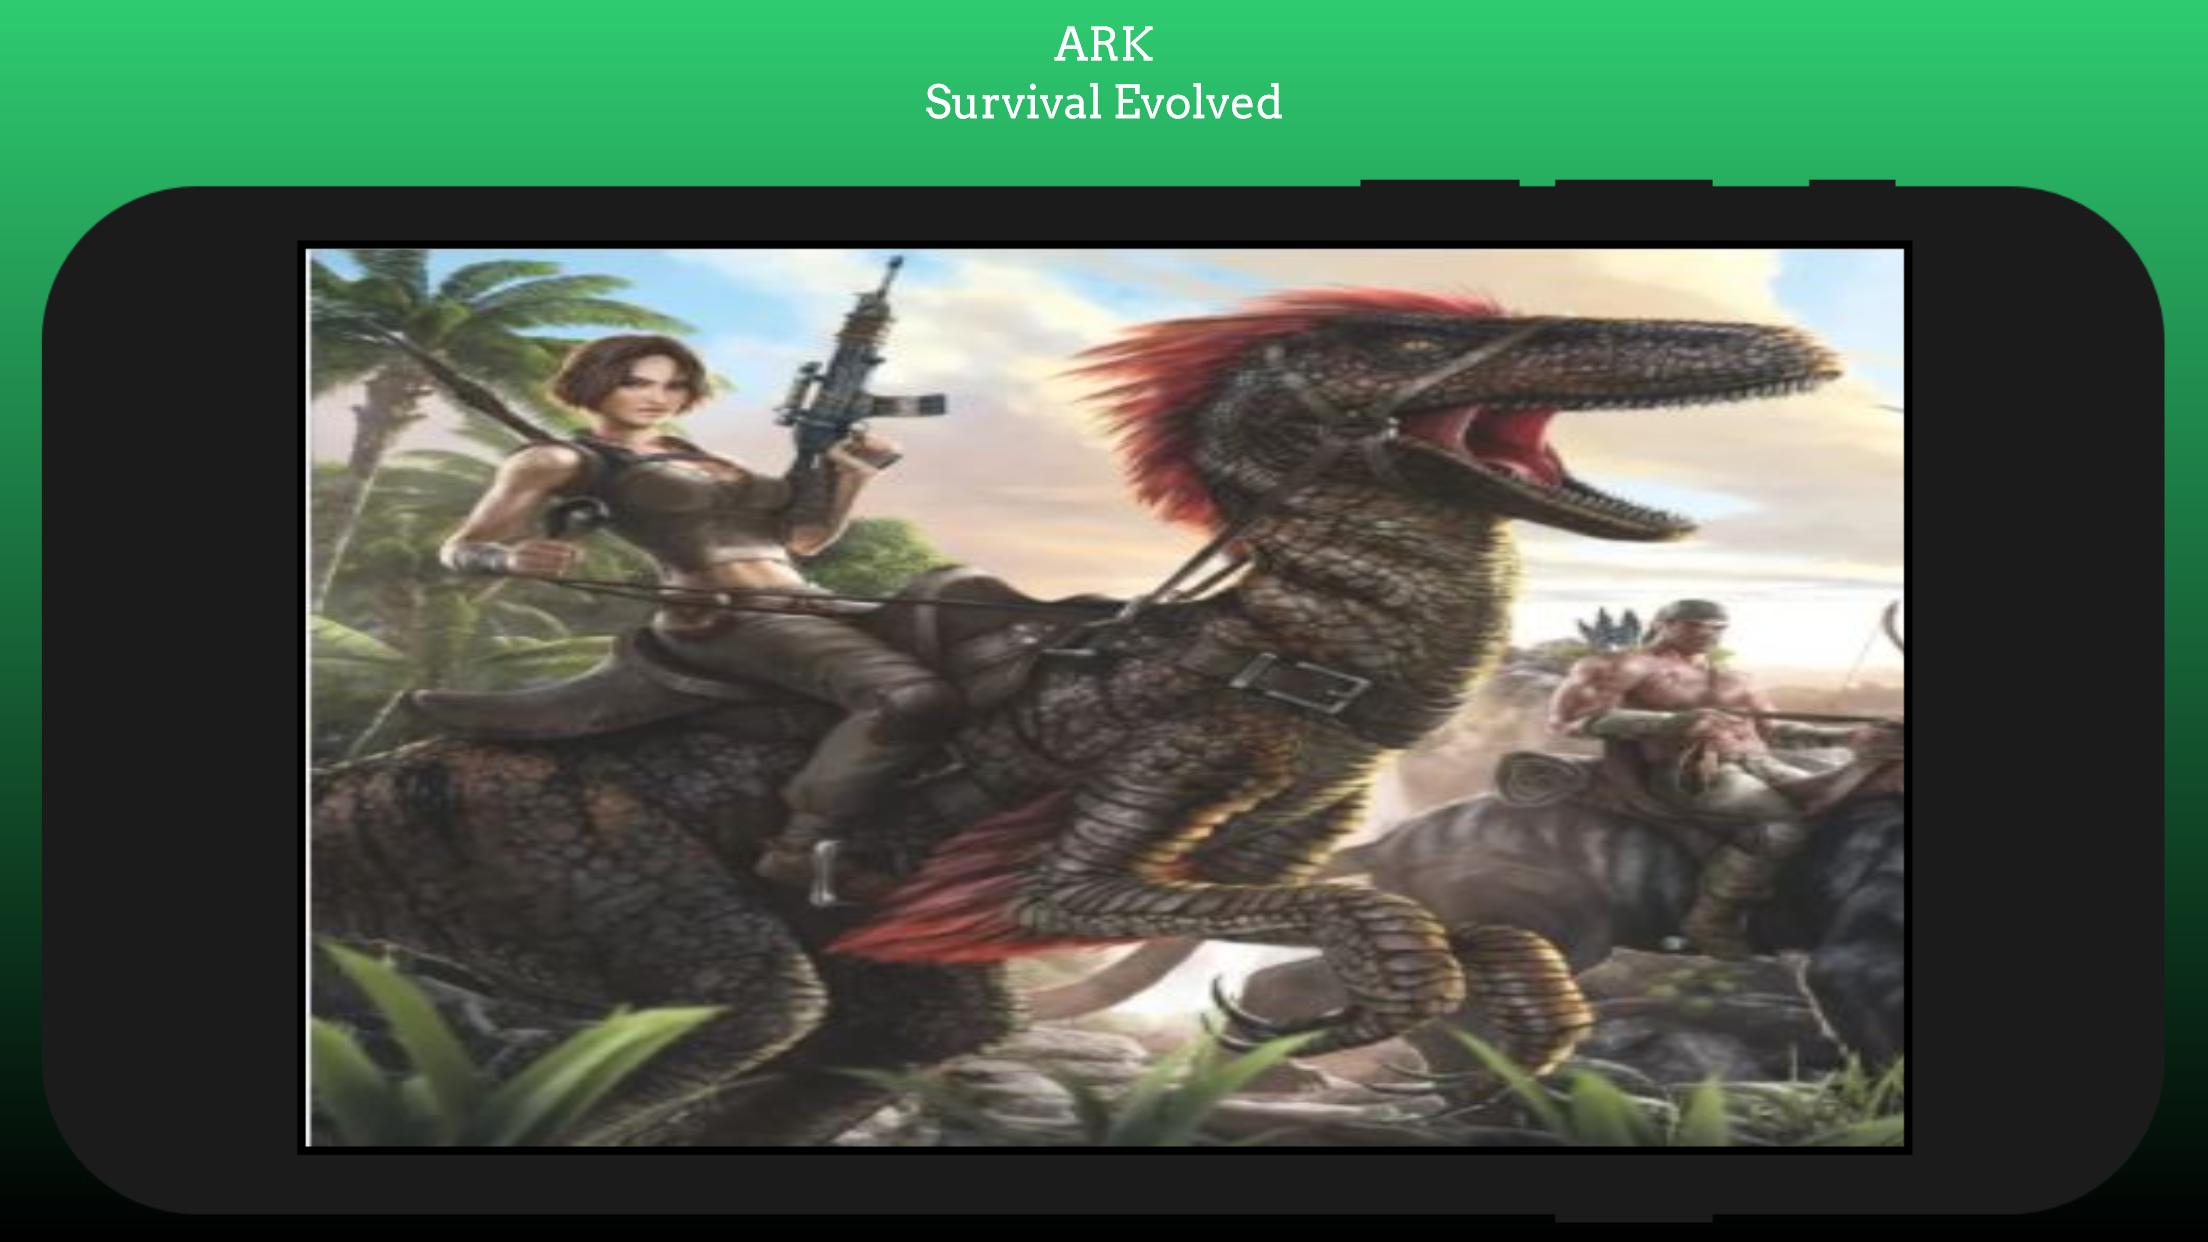 Ark: Survival Evolved. Картинки арка сурвавер и волд 2д. АРК файл. Ark Survival Evolved на телефон.